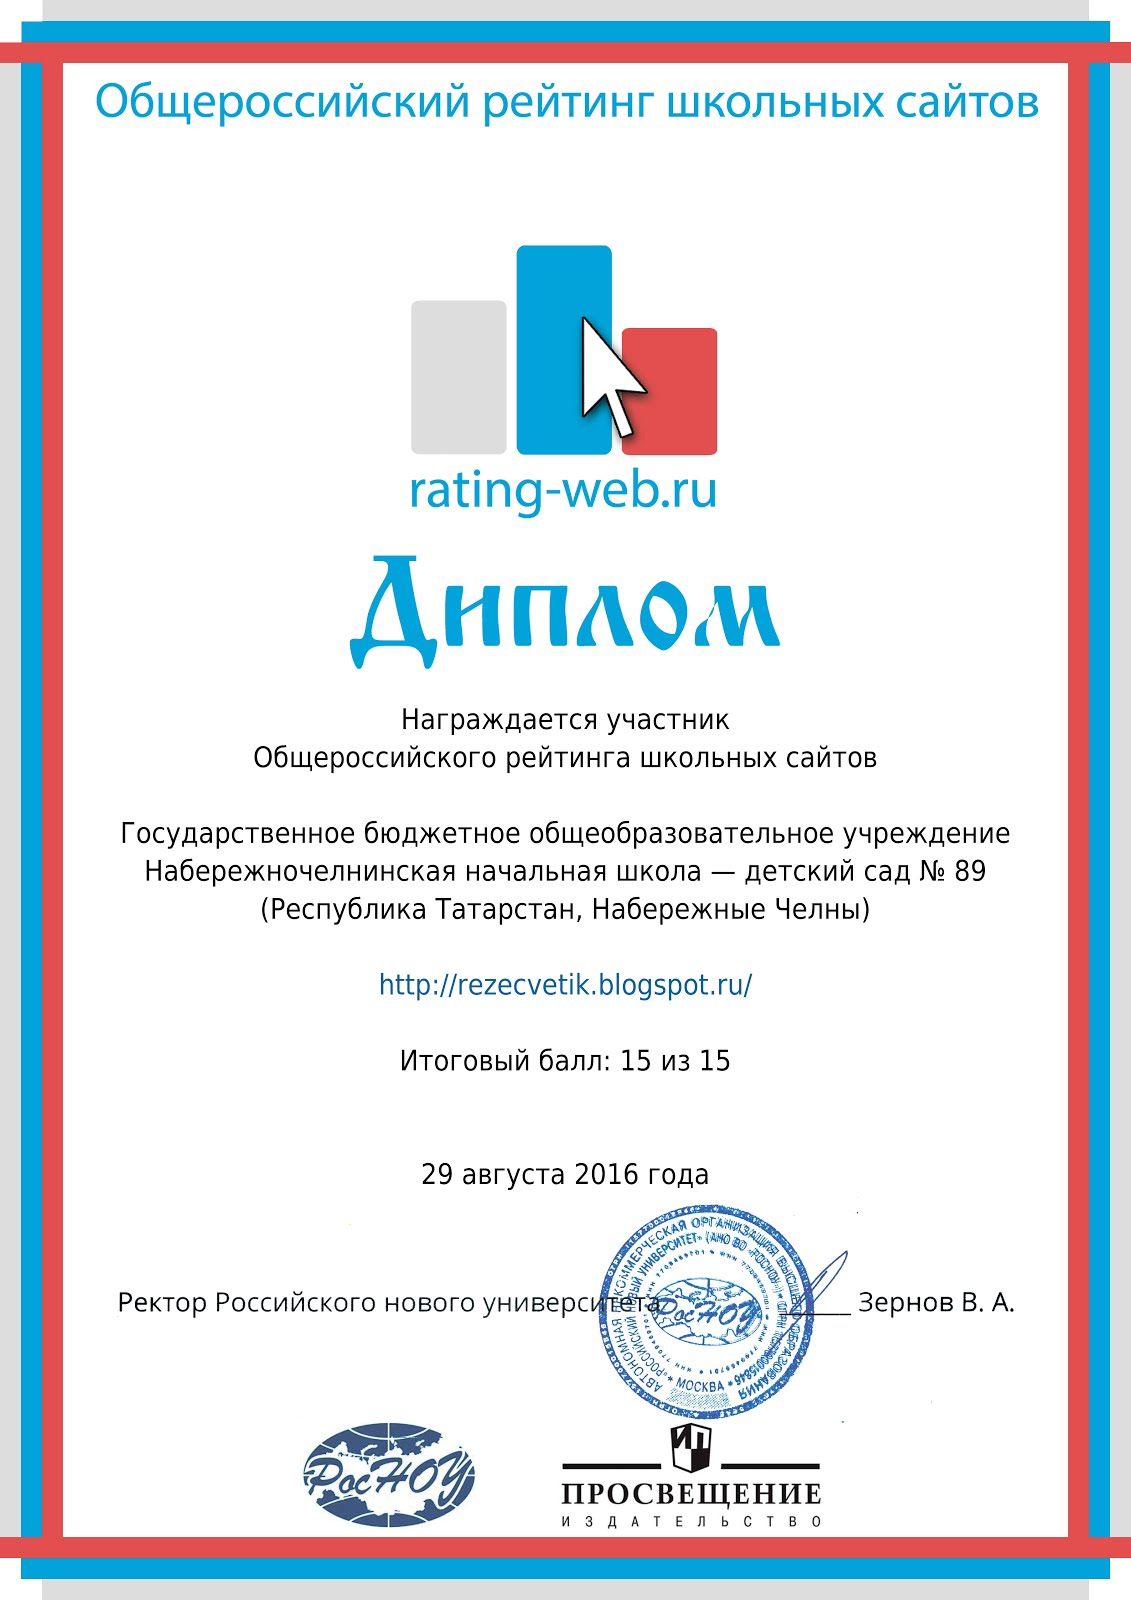 Диплом Общероссийского рейтинга школьных сайтов. Сайт высокого уровня